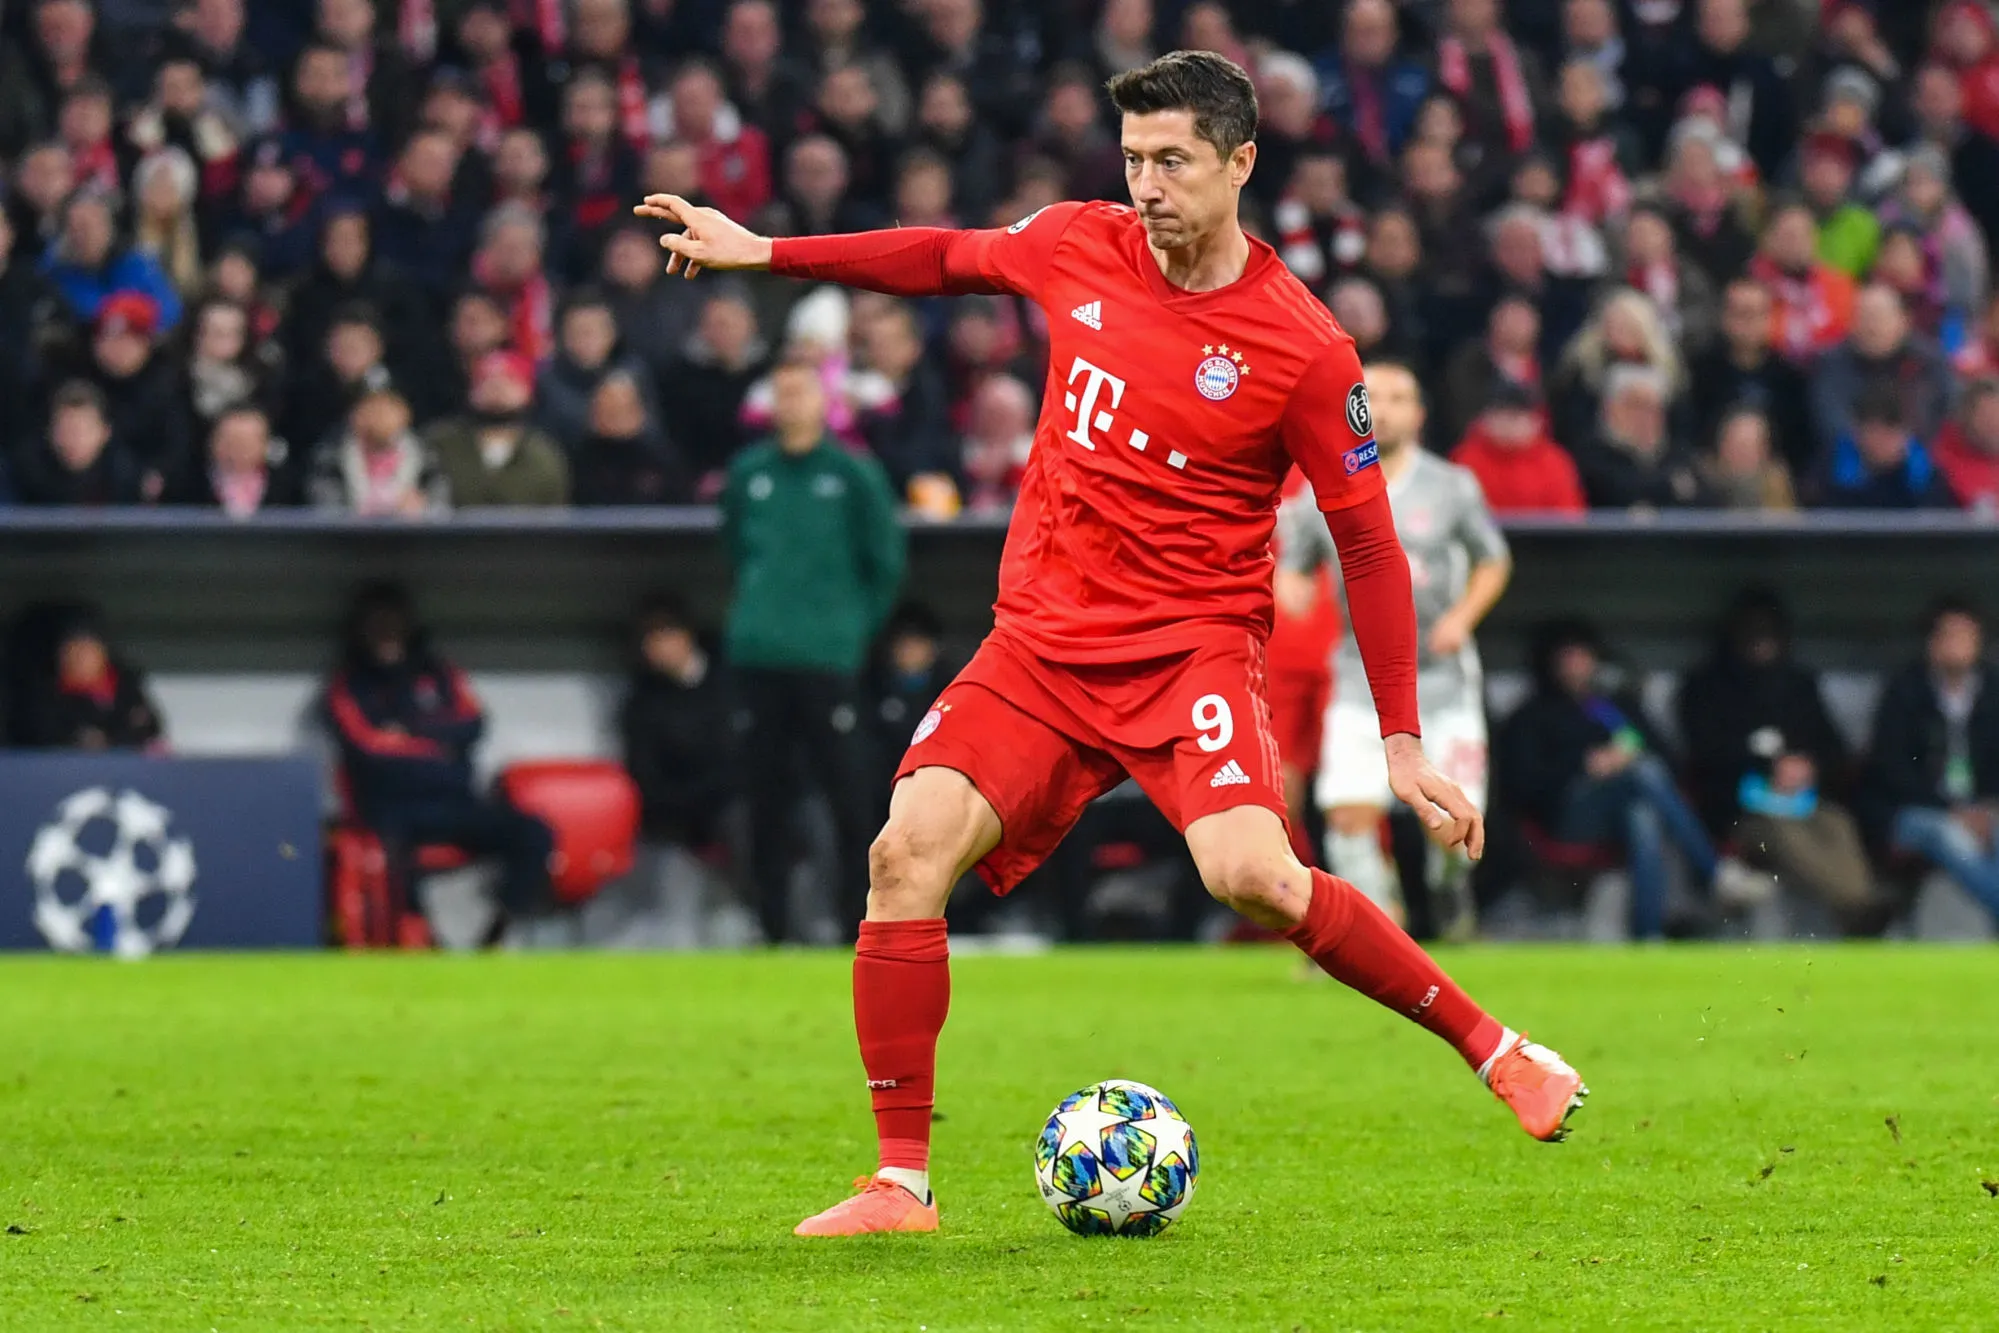 Pronostic Bayern Munich Eintracht Francfort : Analyse, prono et cotes de la demi-finale de Coupe d'Allemagne